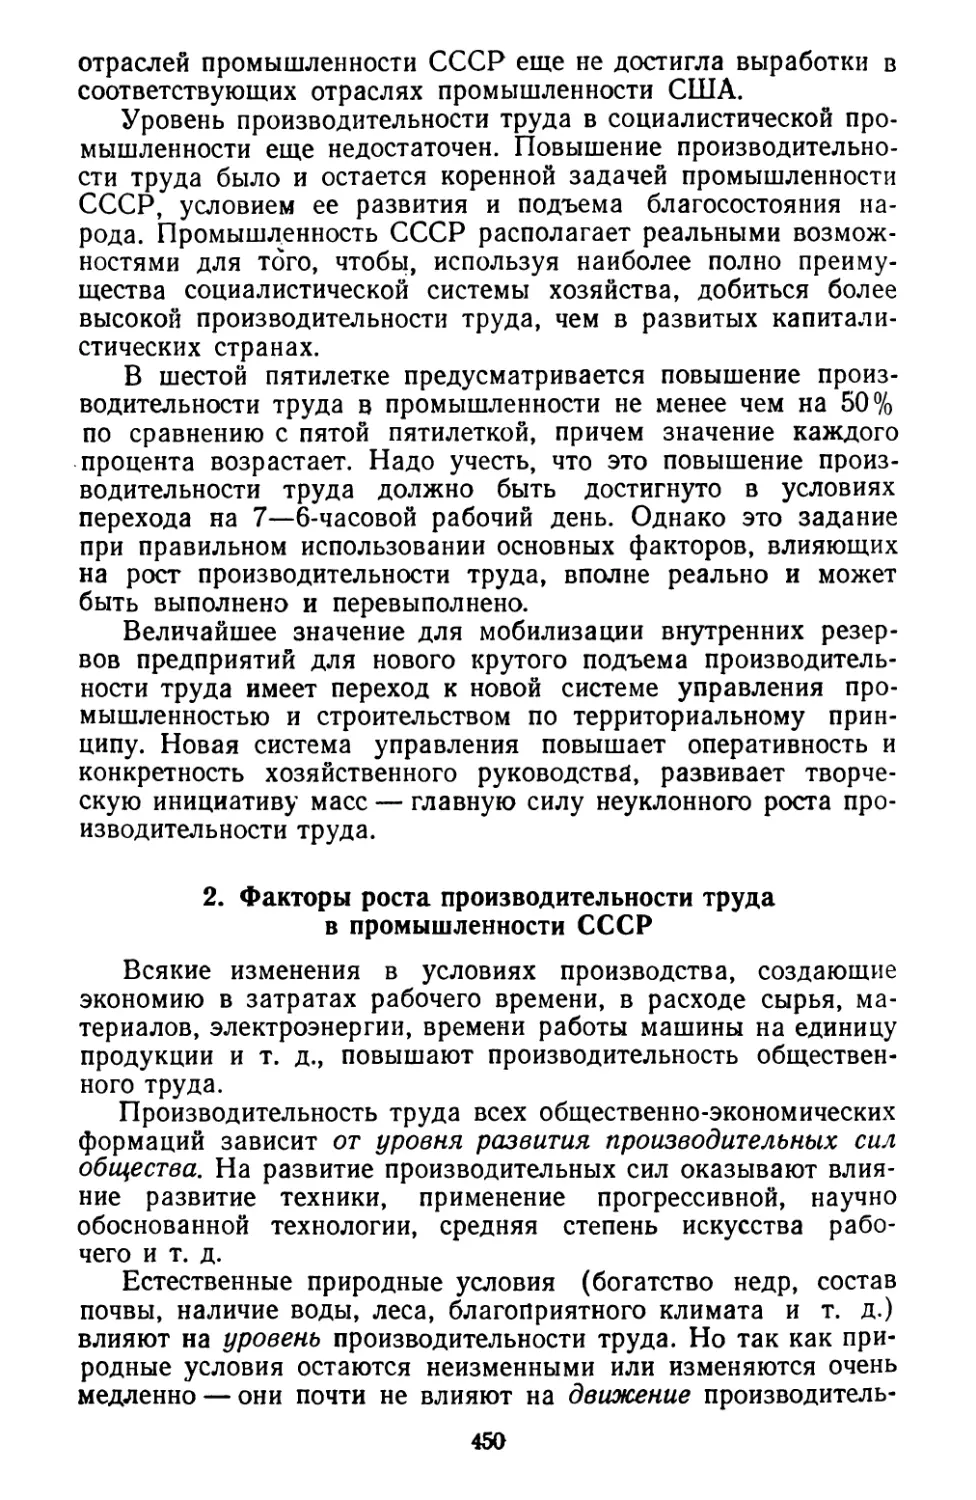 2. Факторы роста производительности труда в промышленности СССР